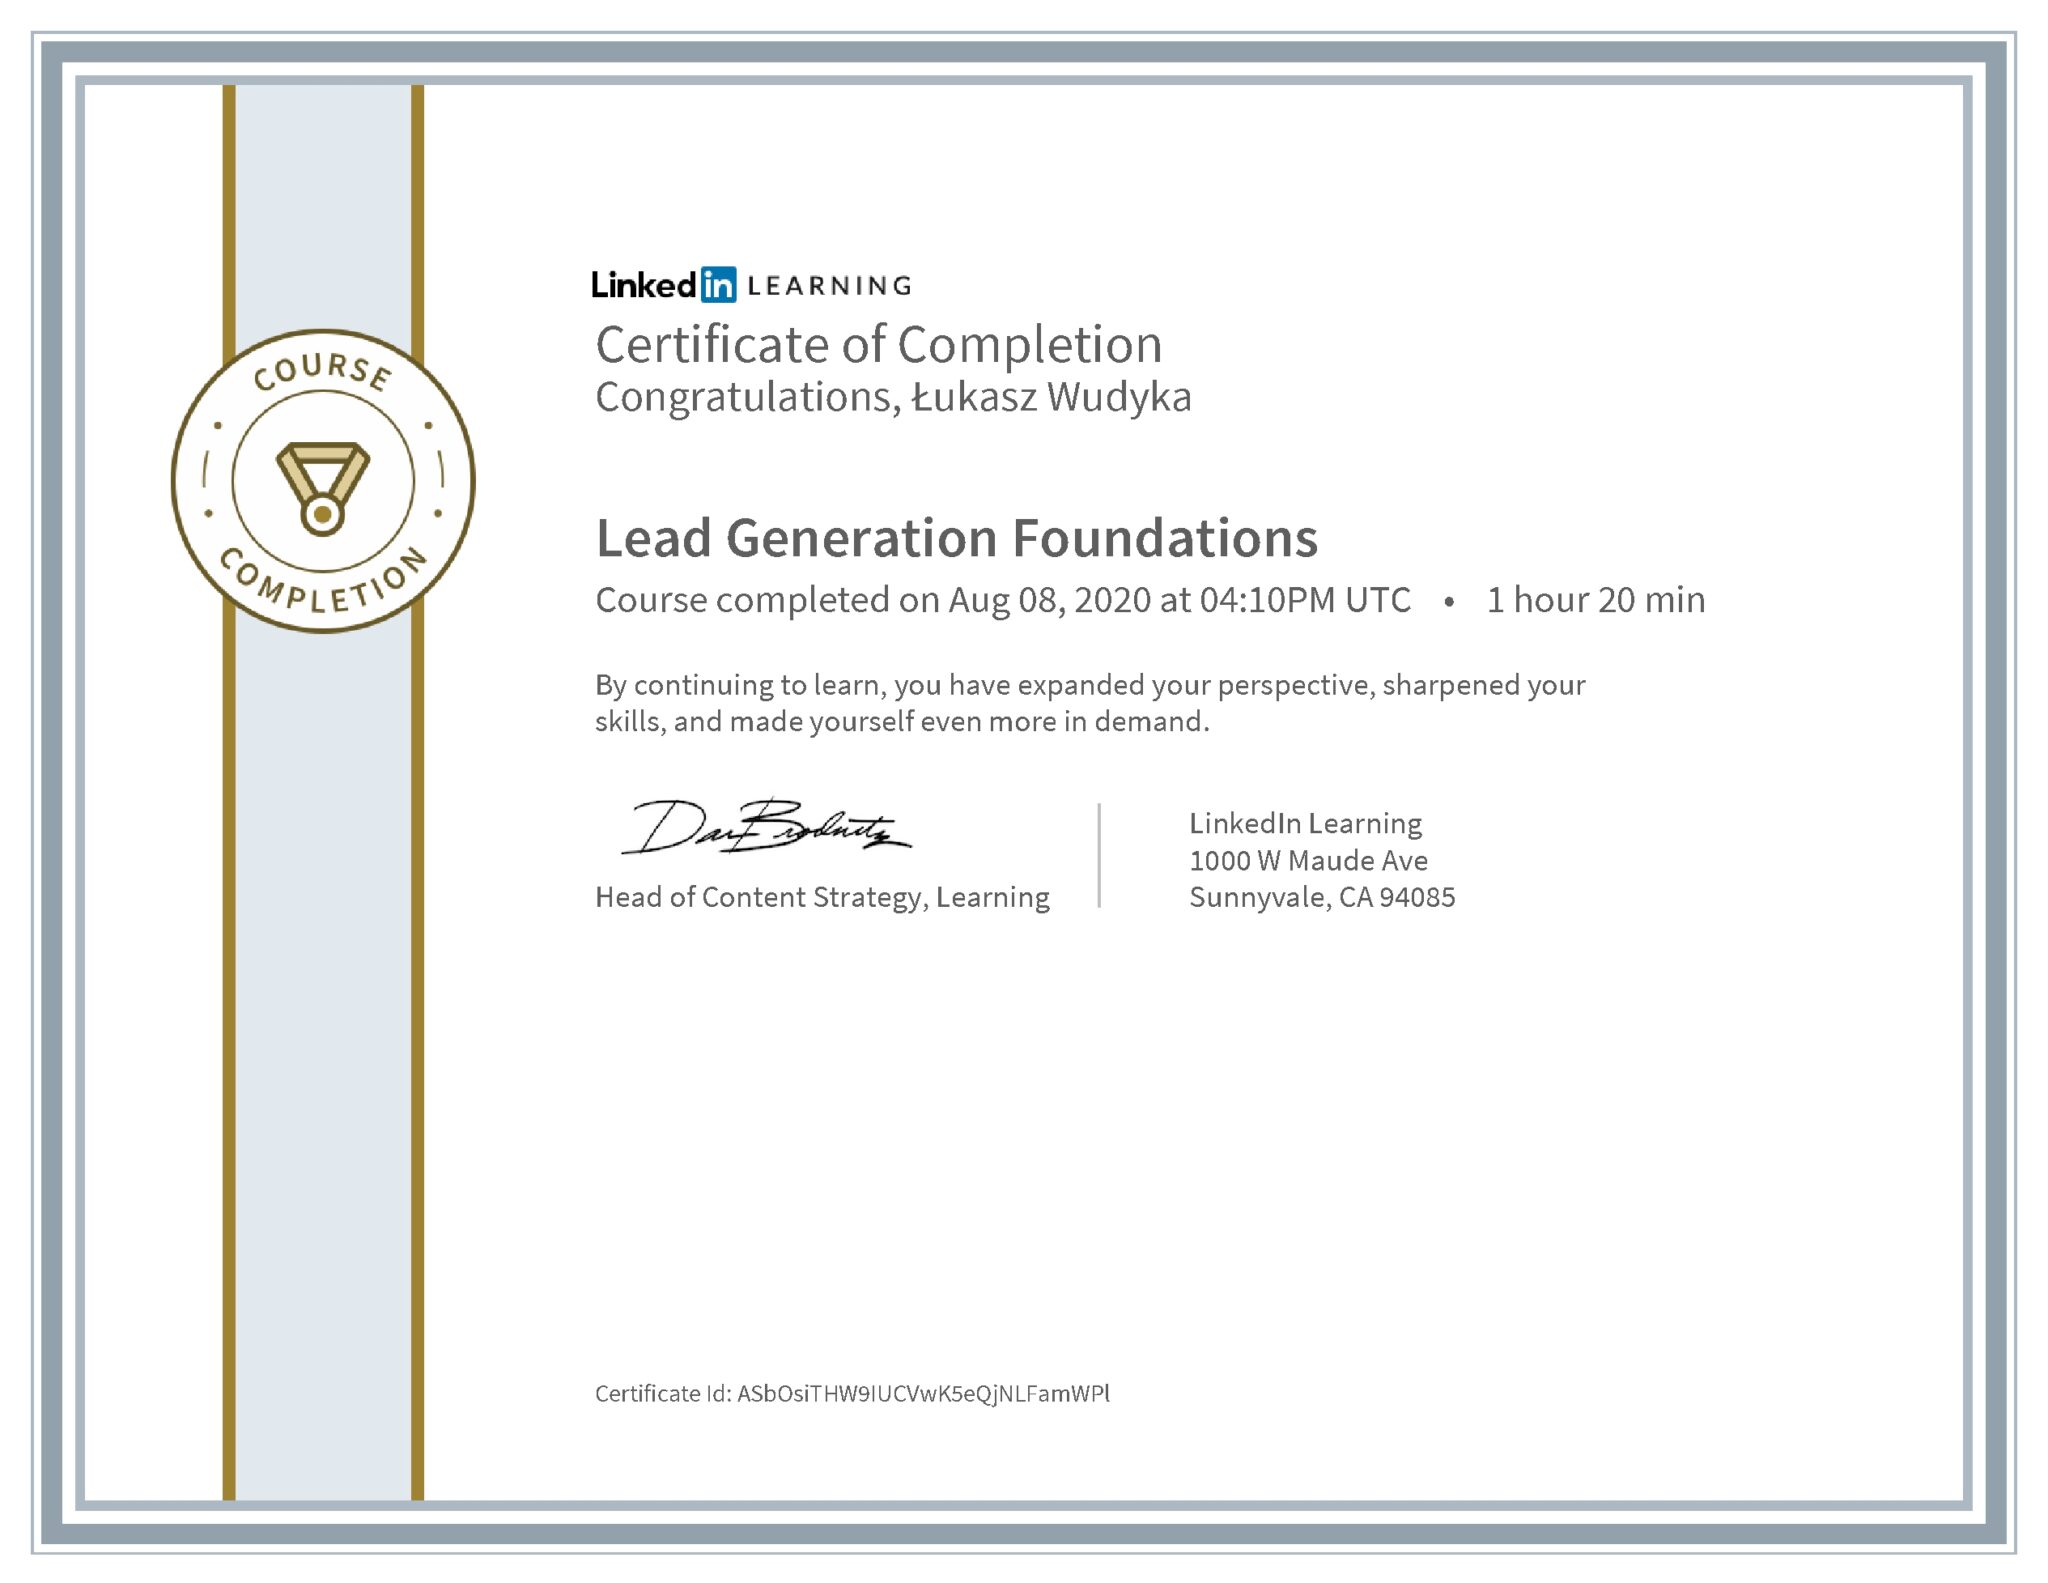 Łukasz Wudyka certyfikat LinkedIn Lead Generation Foundations